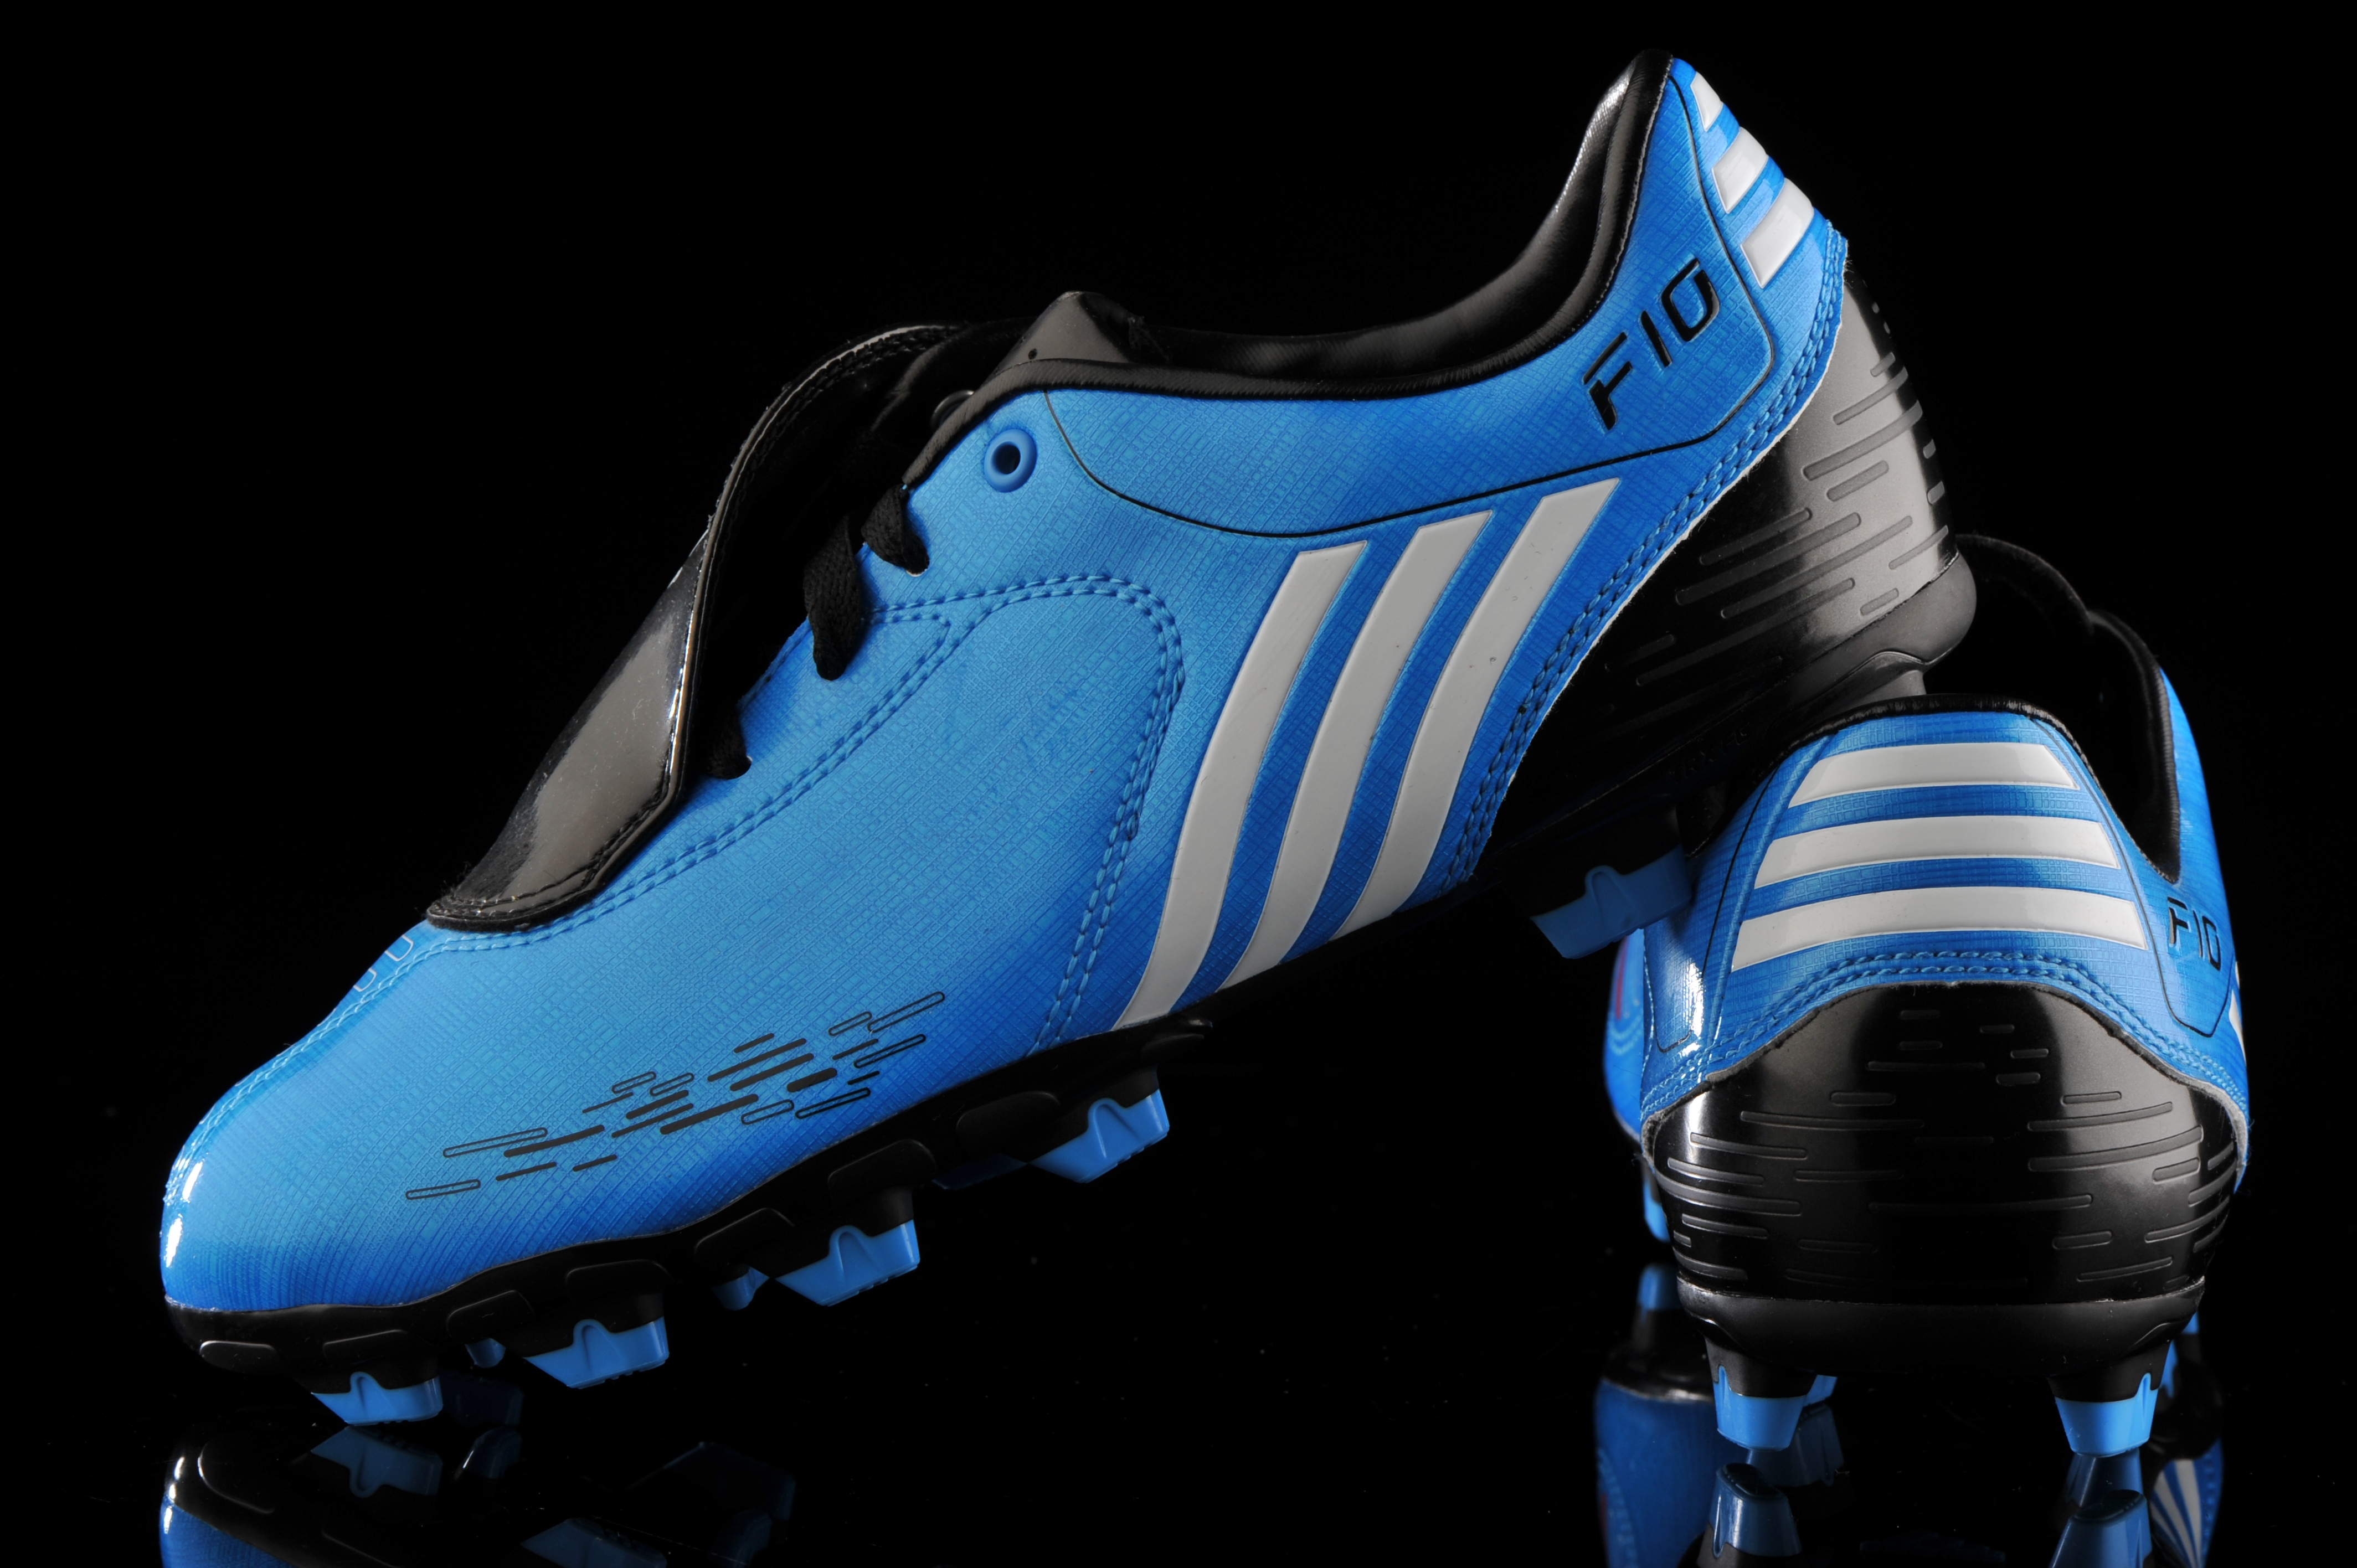 adidas f10 football boots